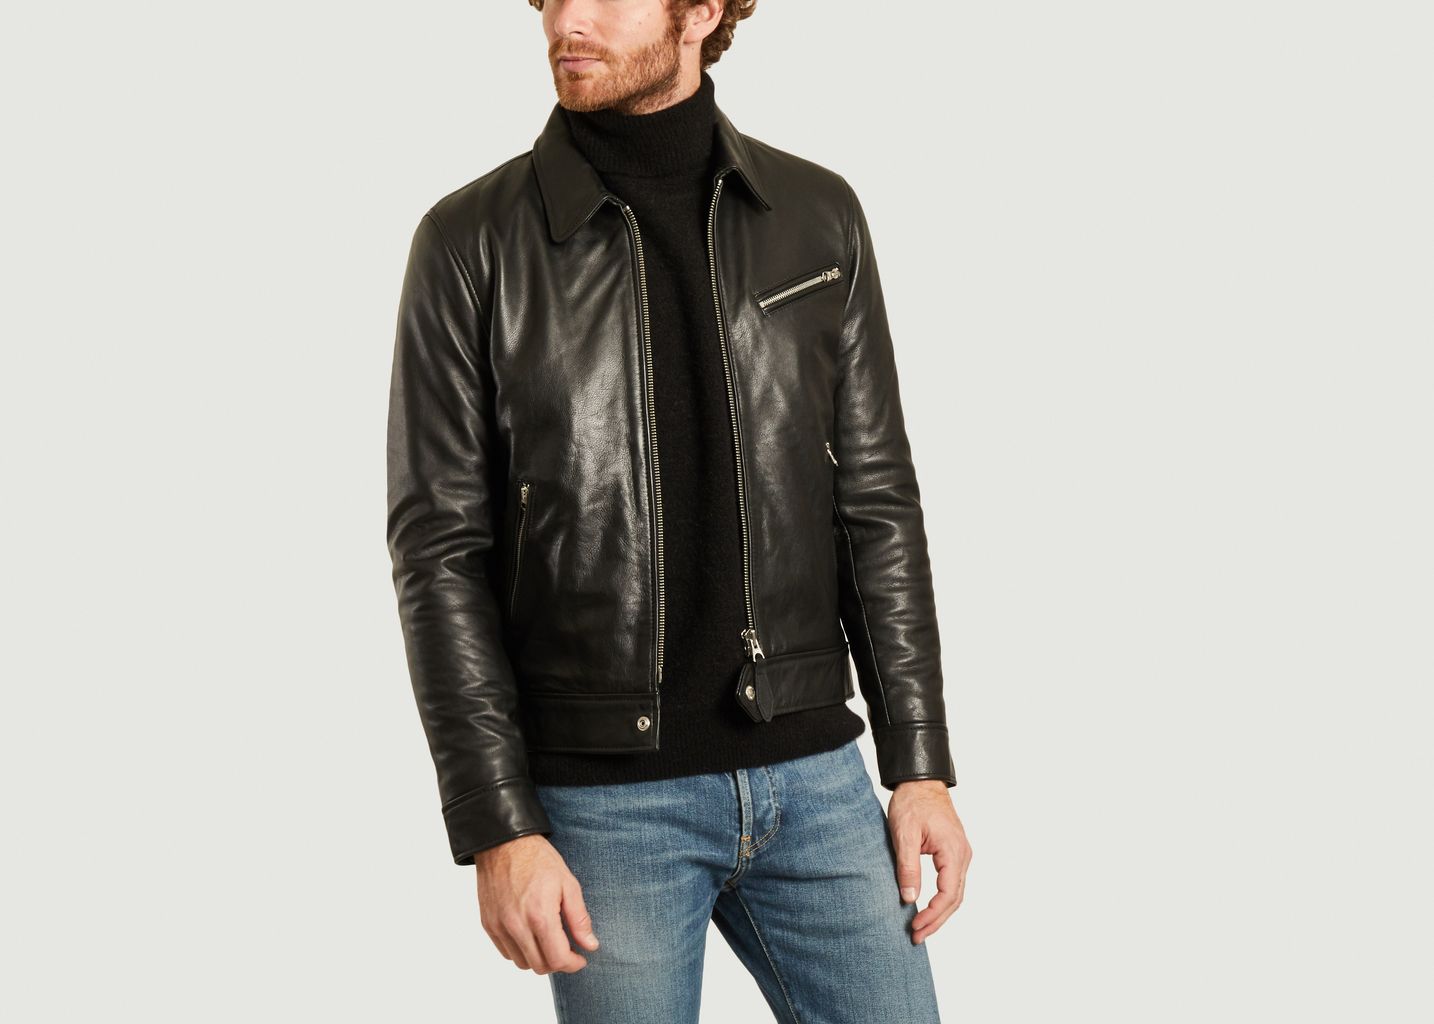 Montana leather jacket - Schott NYC